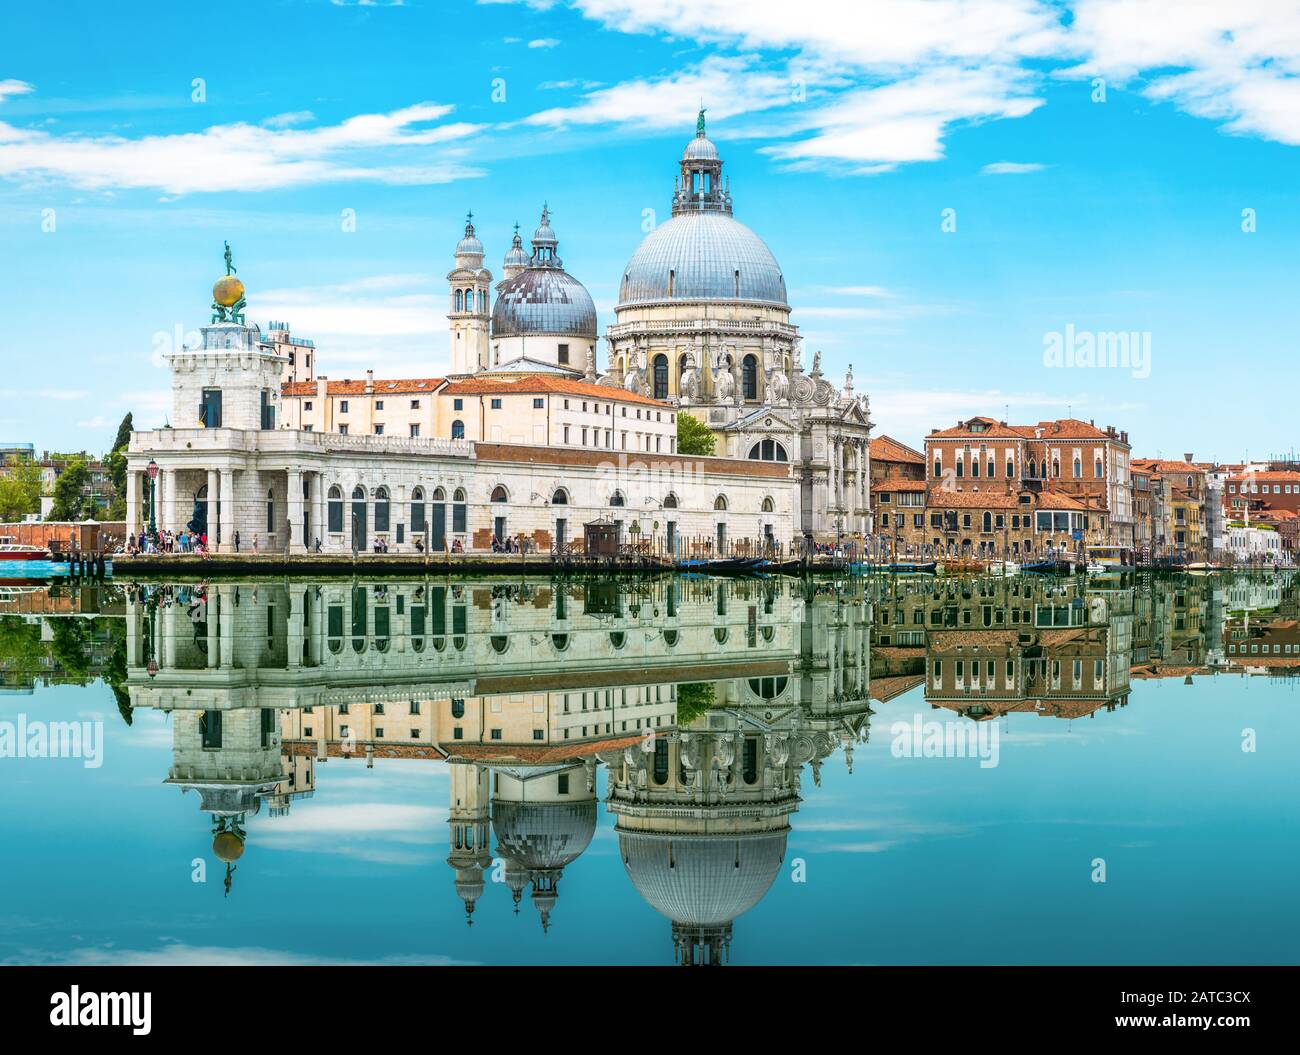 Venedig, Italien. Wunderbarer Blick auf Venedig mit Spiegelreflexion im Wasser. Blick auf die alte Architektur Venedigs am Canal Grande. Schöner Sommer sce Stockfoto